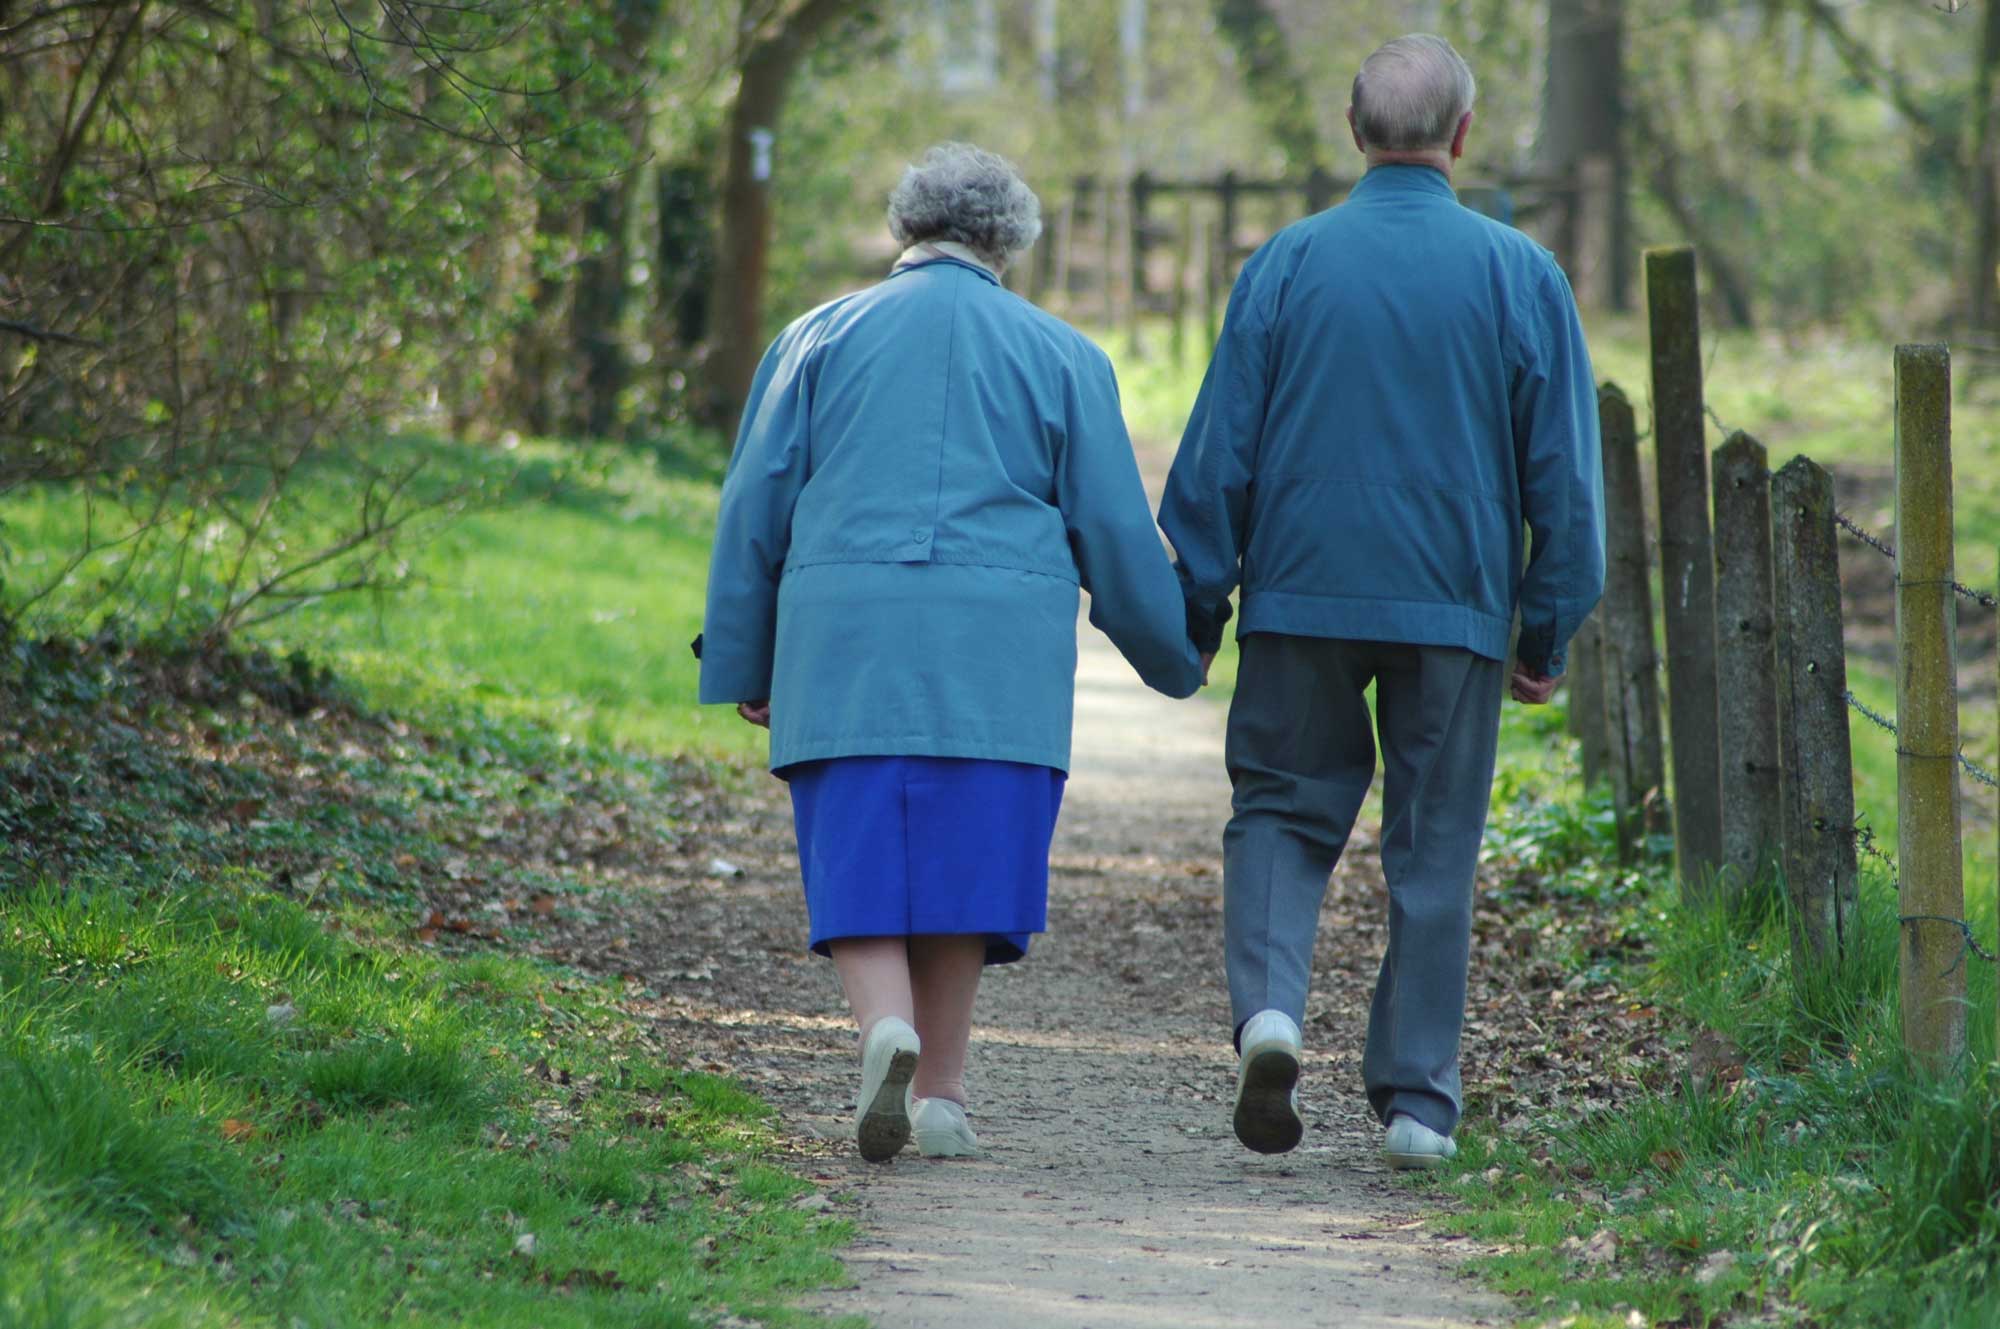 Elderly couple walking together holding hands